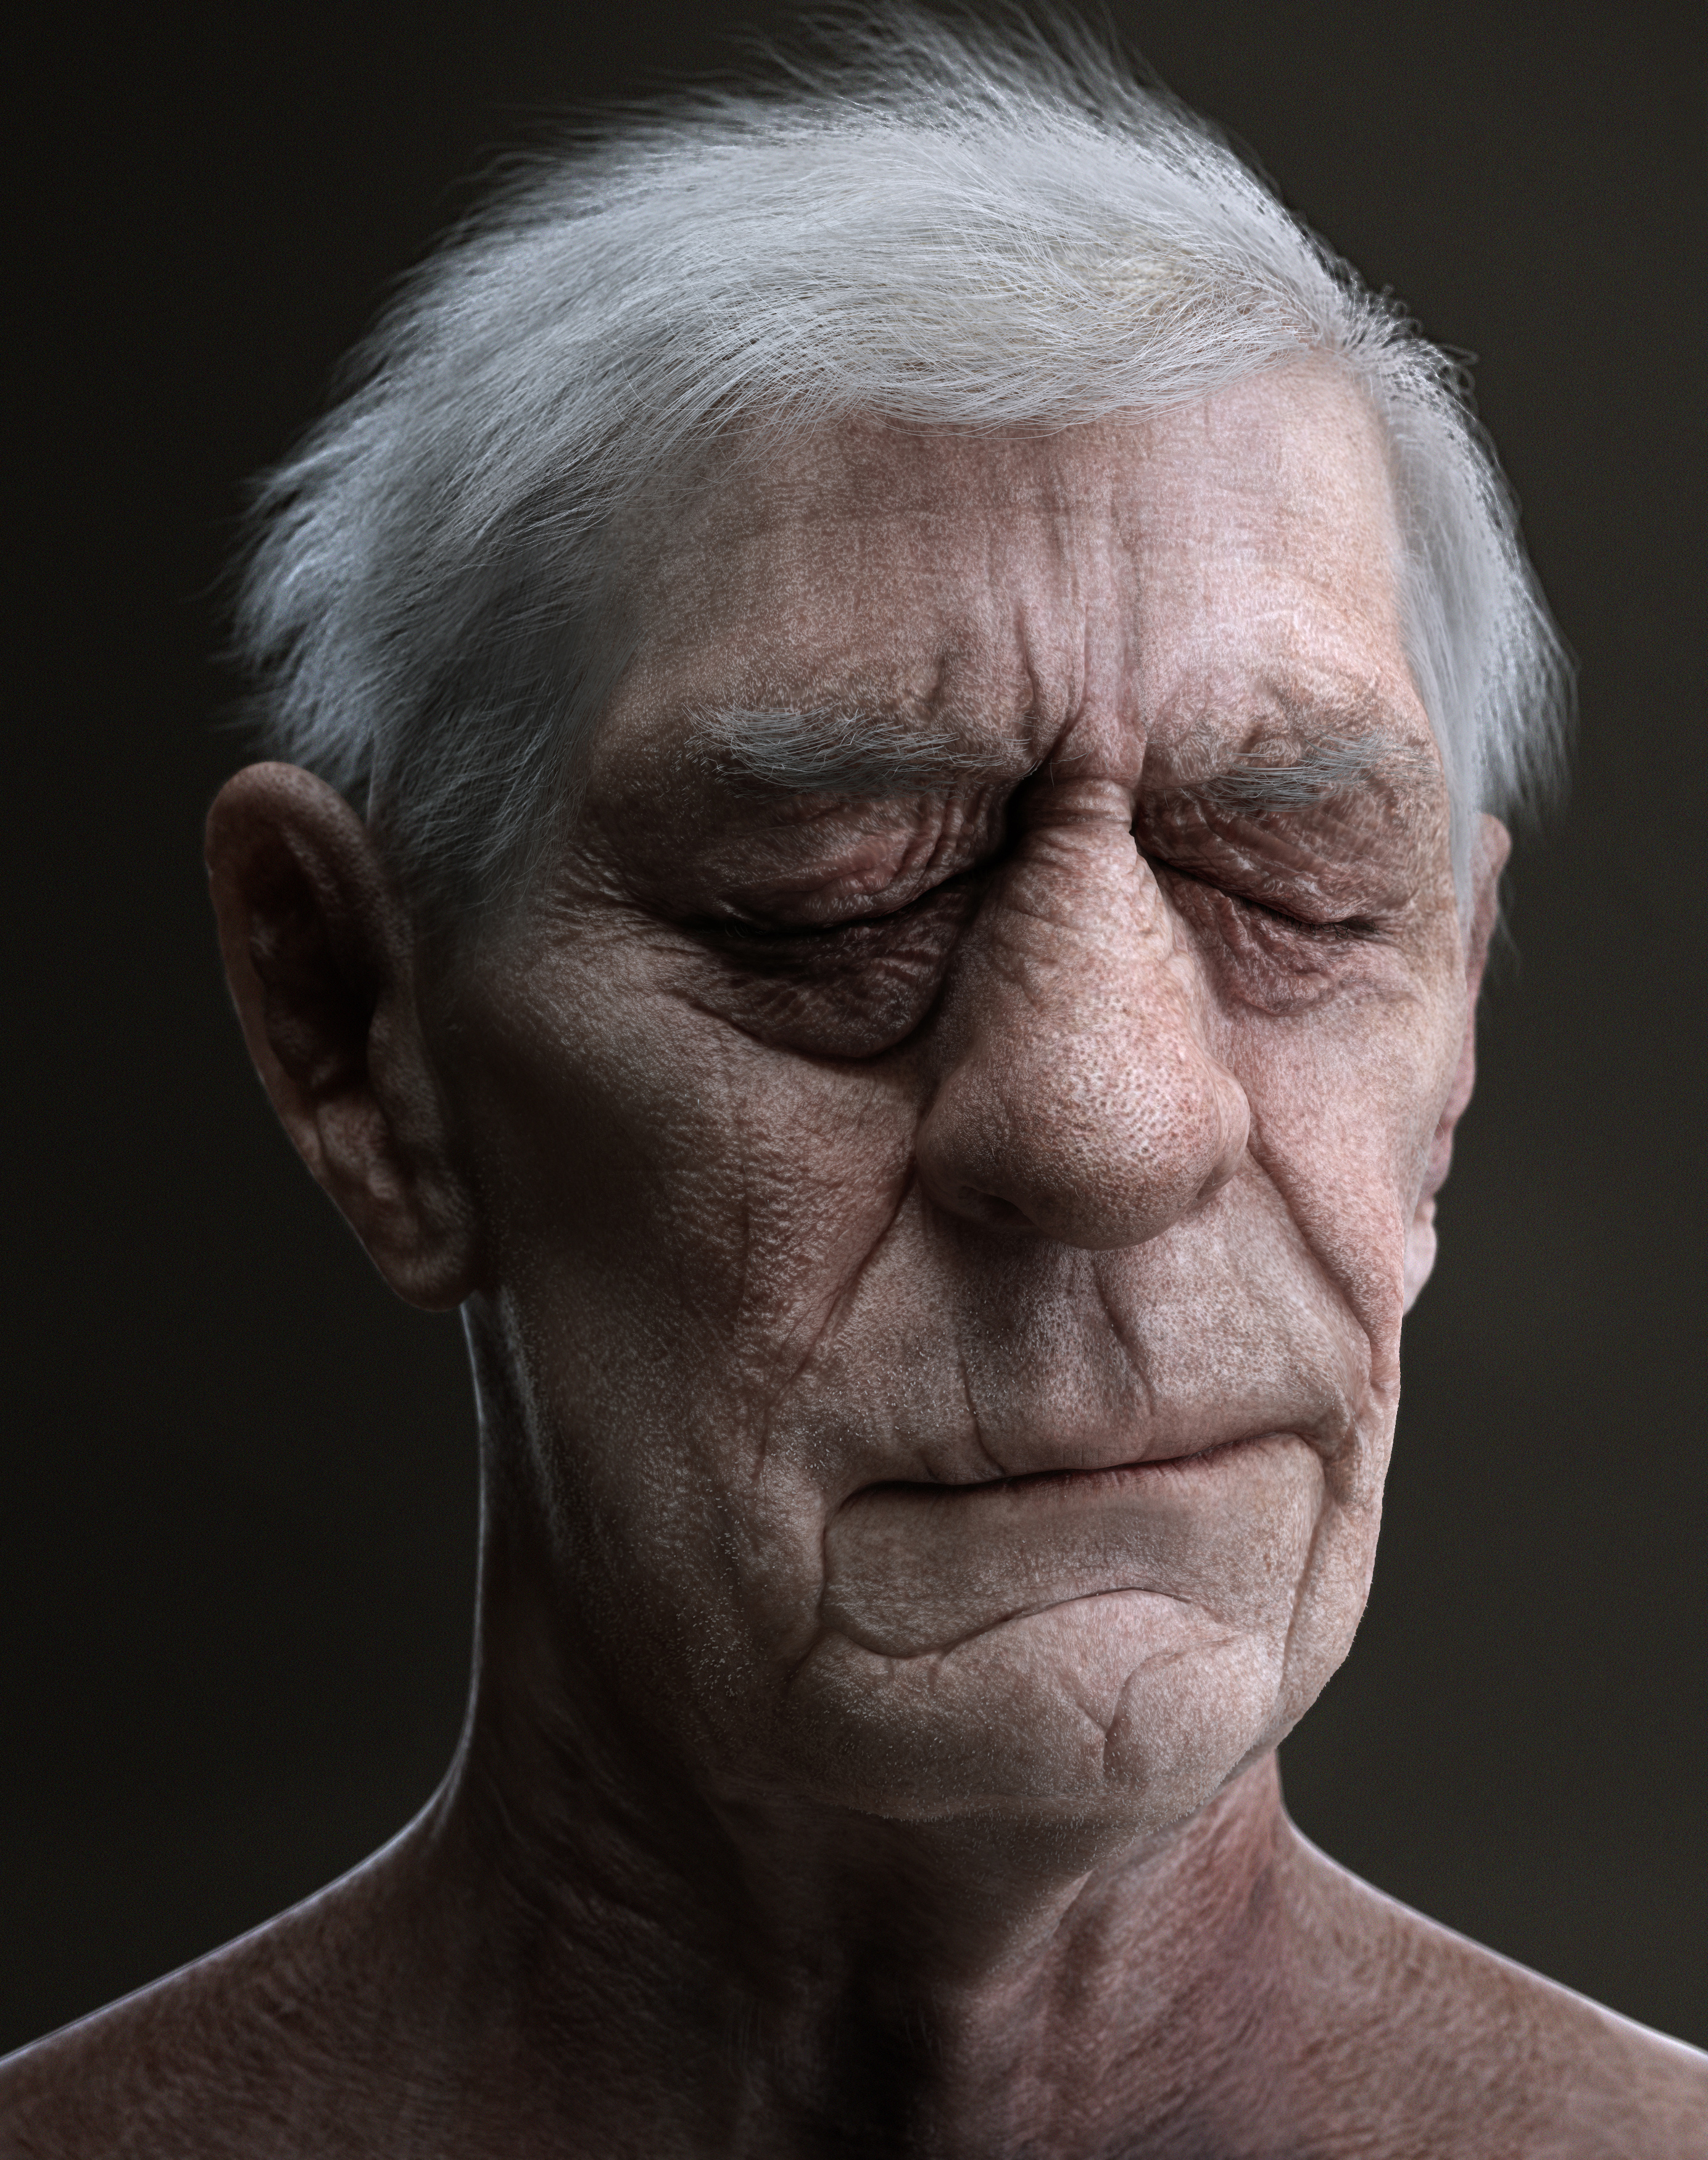 Elder older wordwall. Портрет старого человека. Old - старый. Стареющее лицо мужчины.